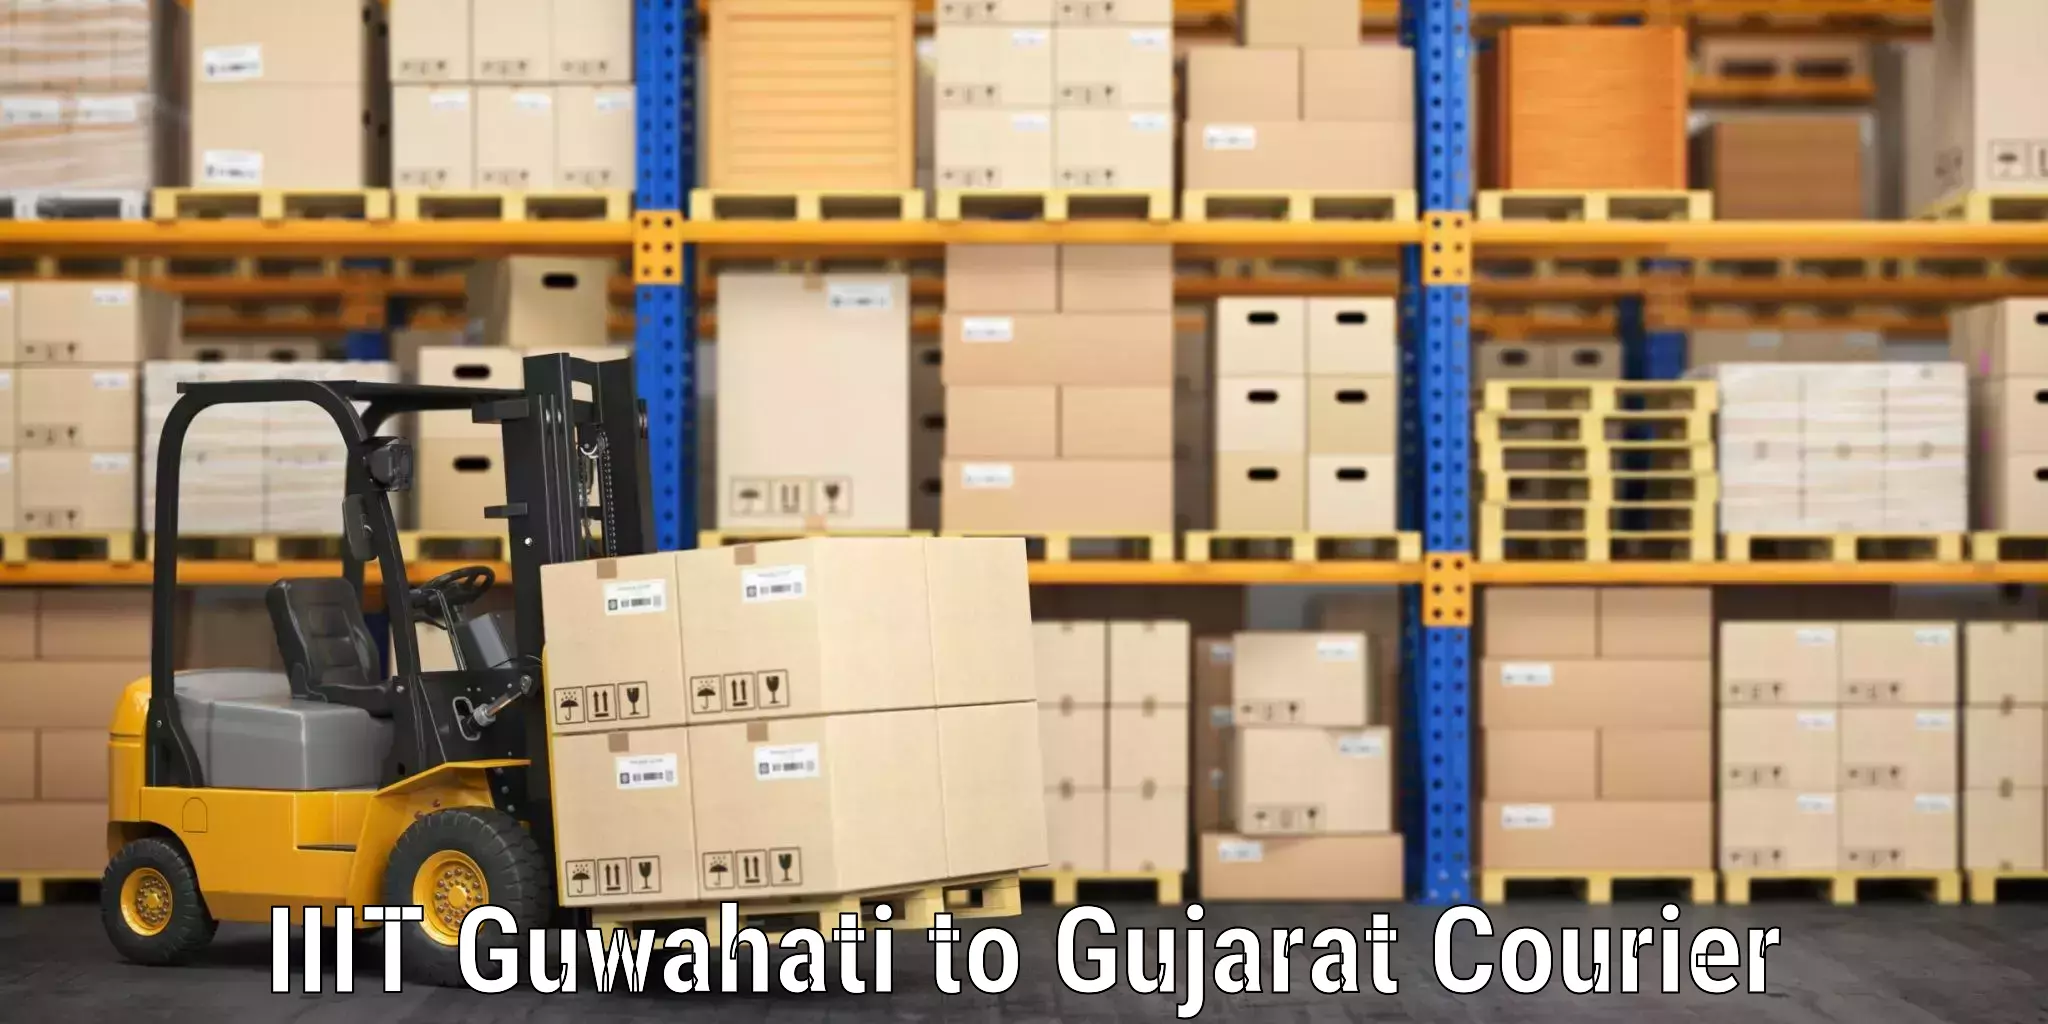 Luggage shipment specialists IIIT Guwahati to Junagadh